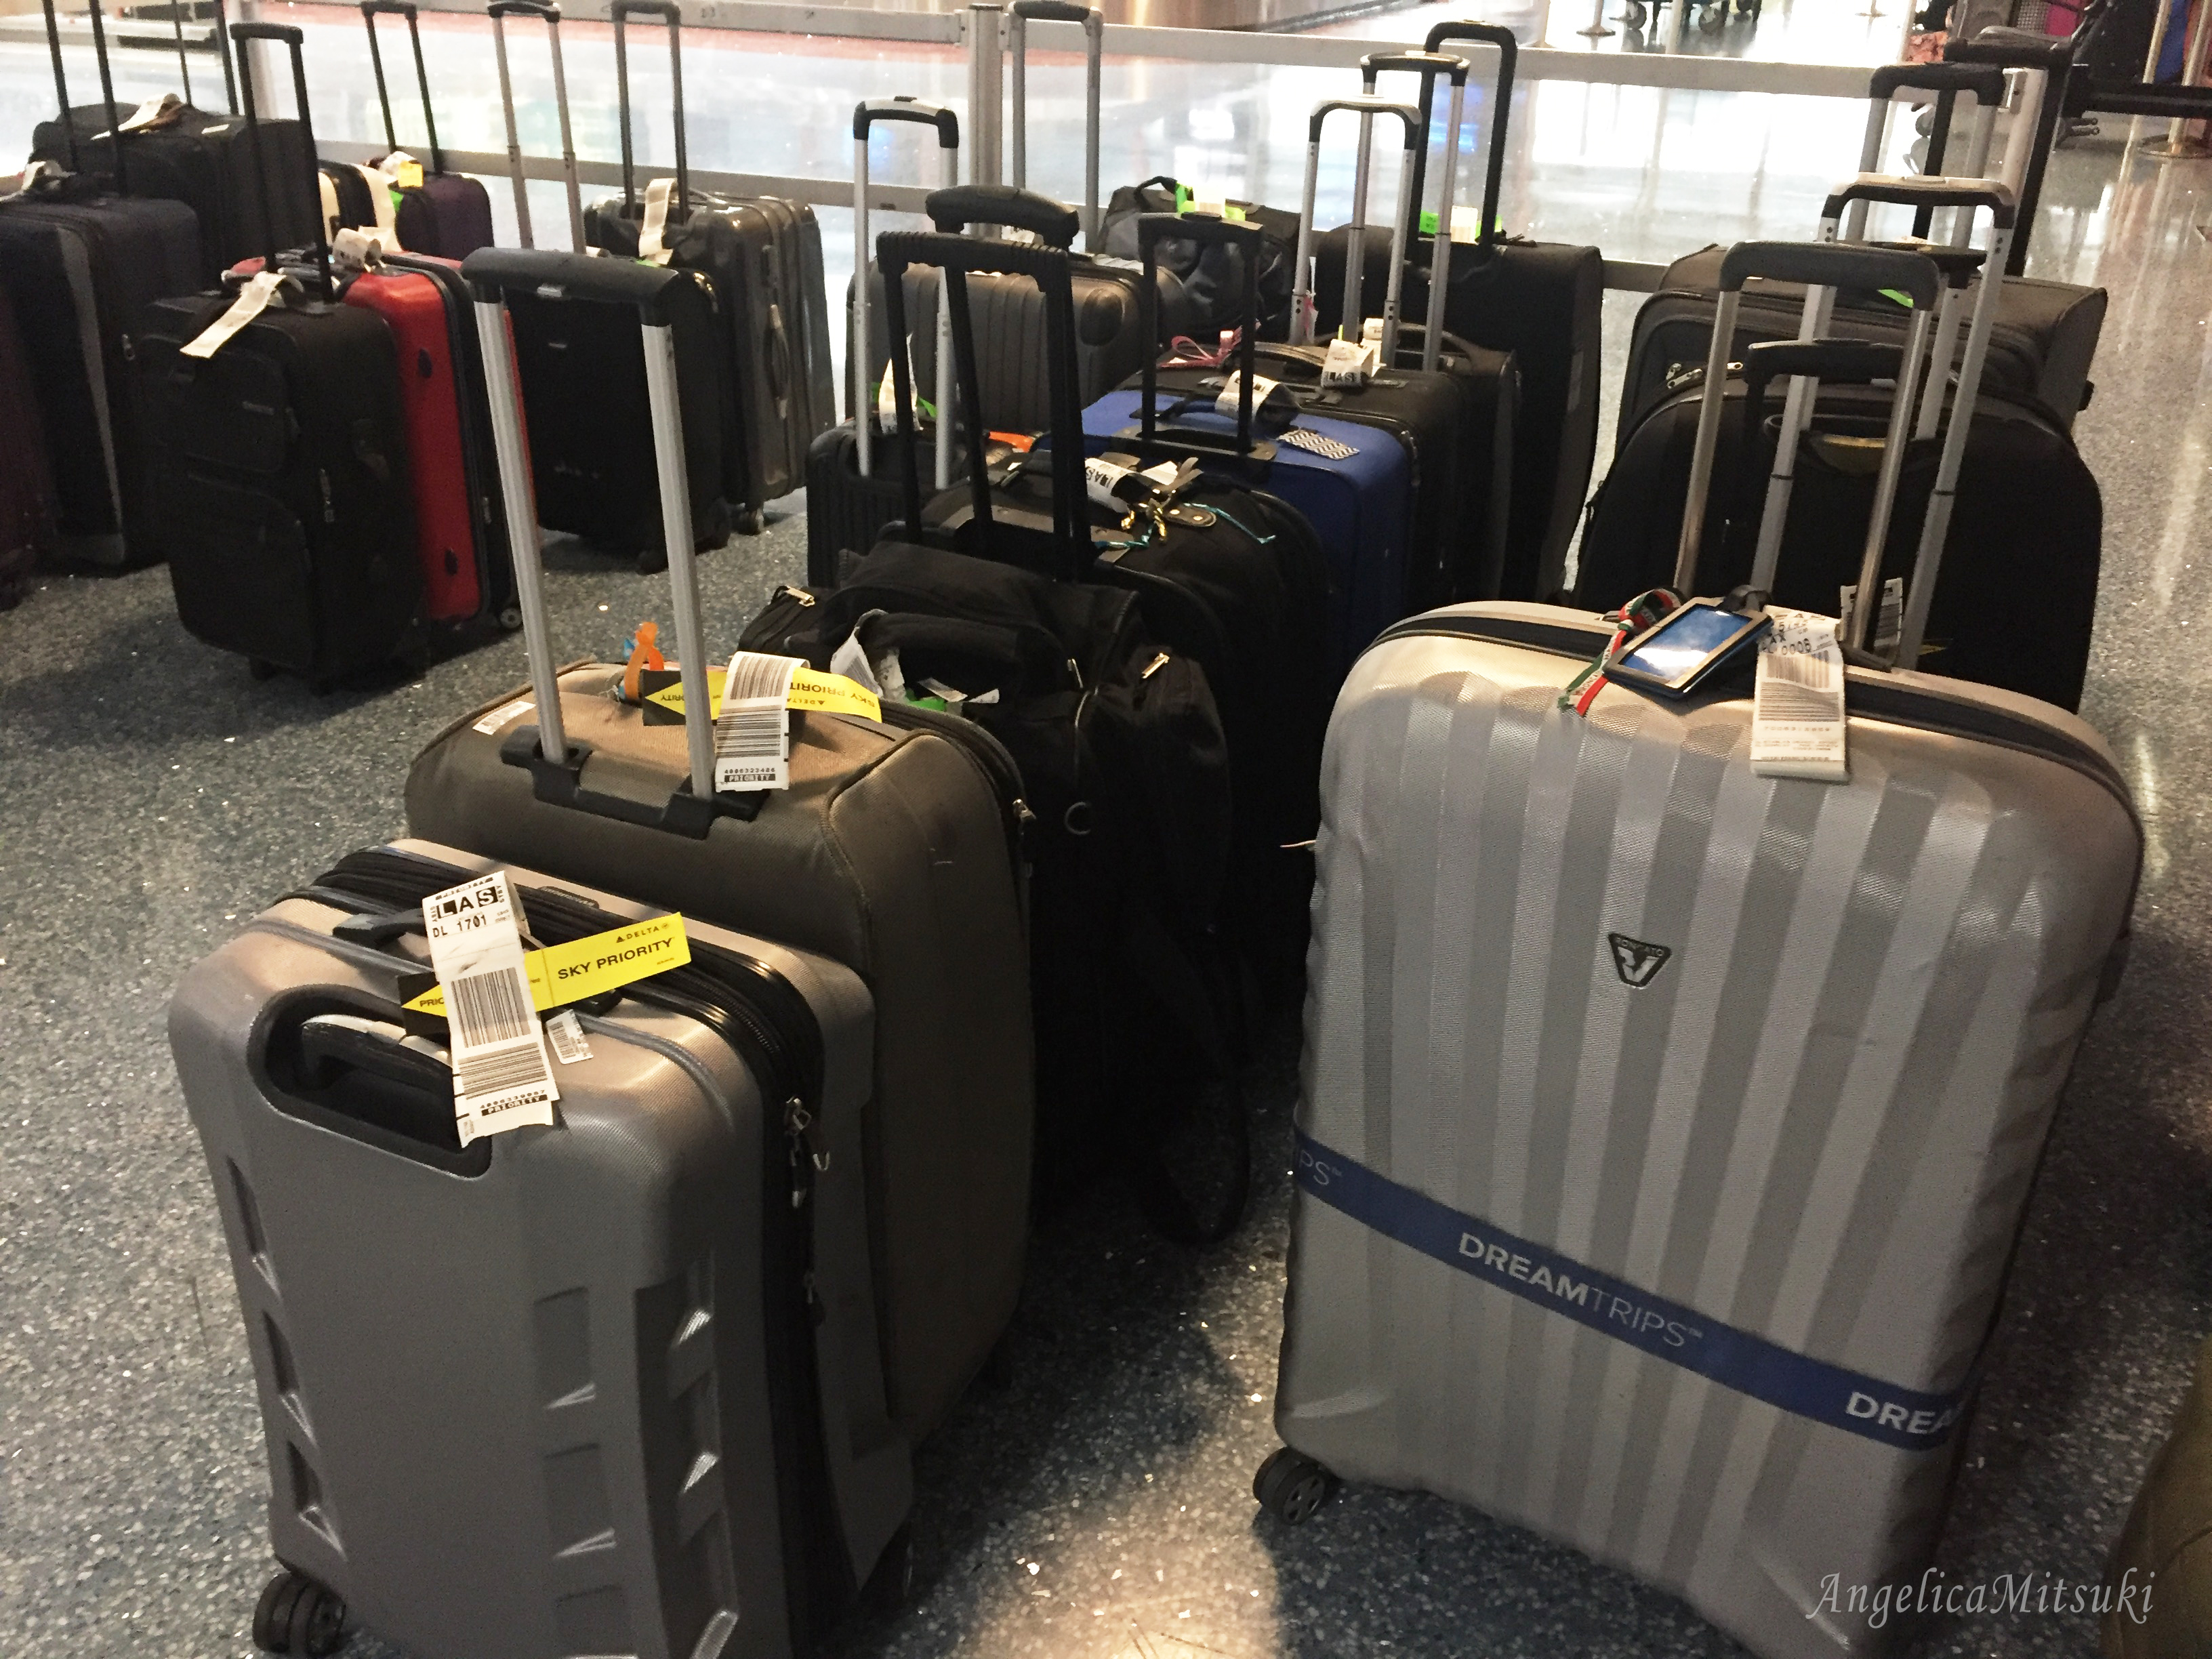 トランジットした空港でスーツケースのピックアップをしたら、すぐに預けるところがあるので探してみてね